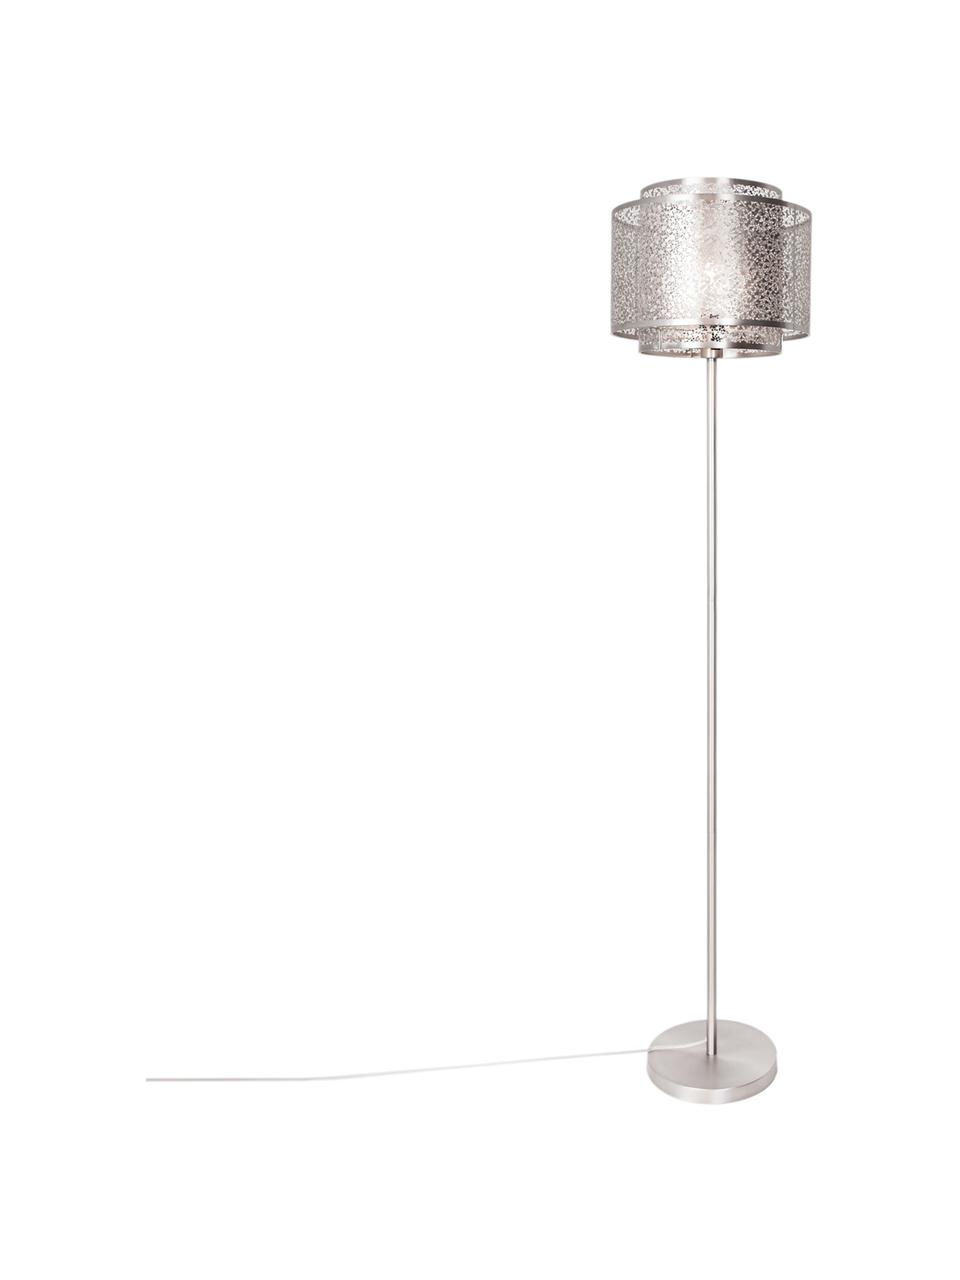 Stehlampe Mesh aus Metall, Nickelfarben, Ø 34 x H 157 cm